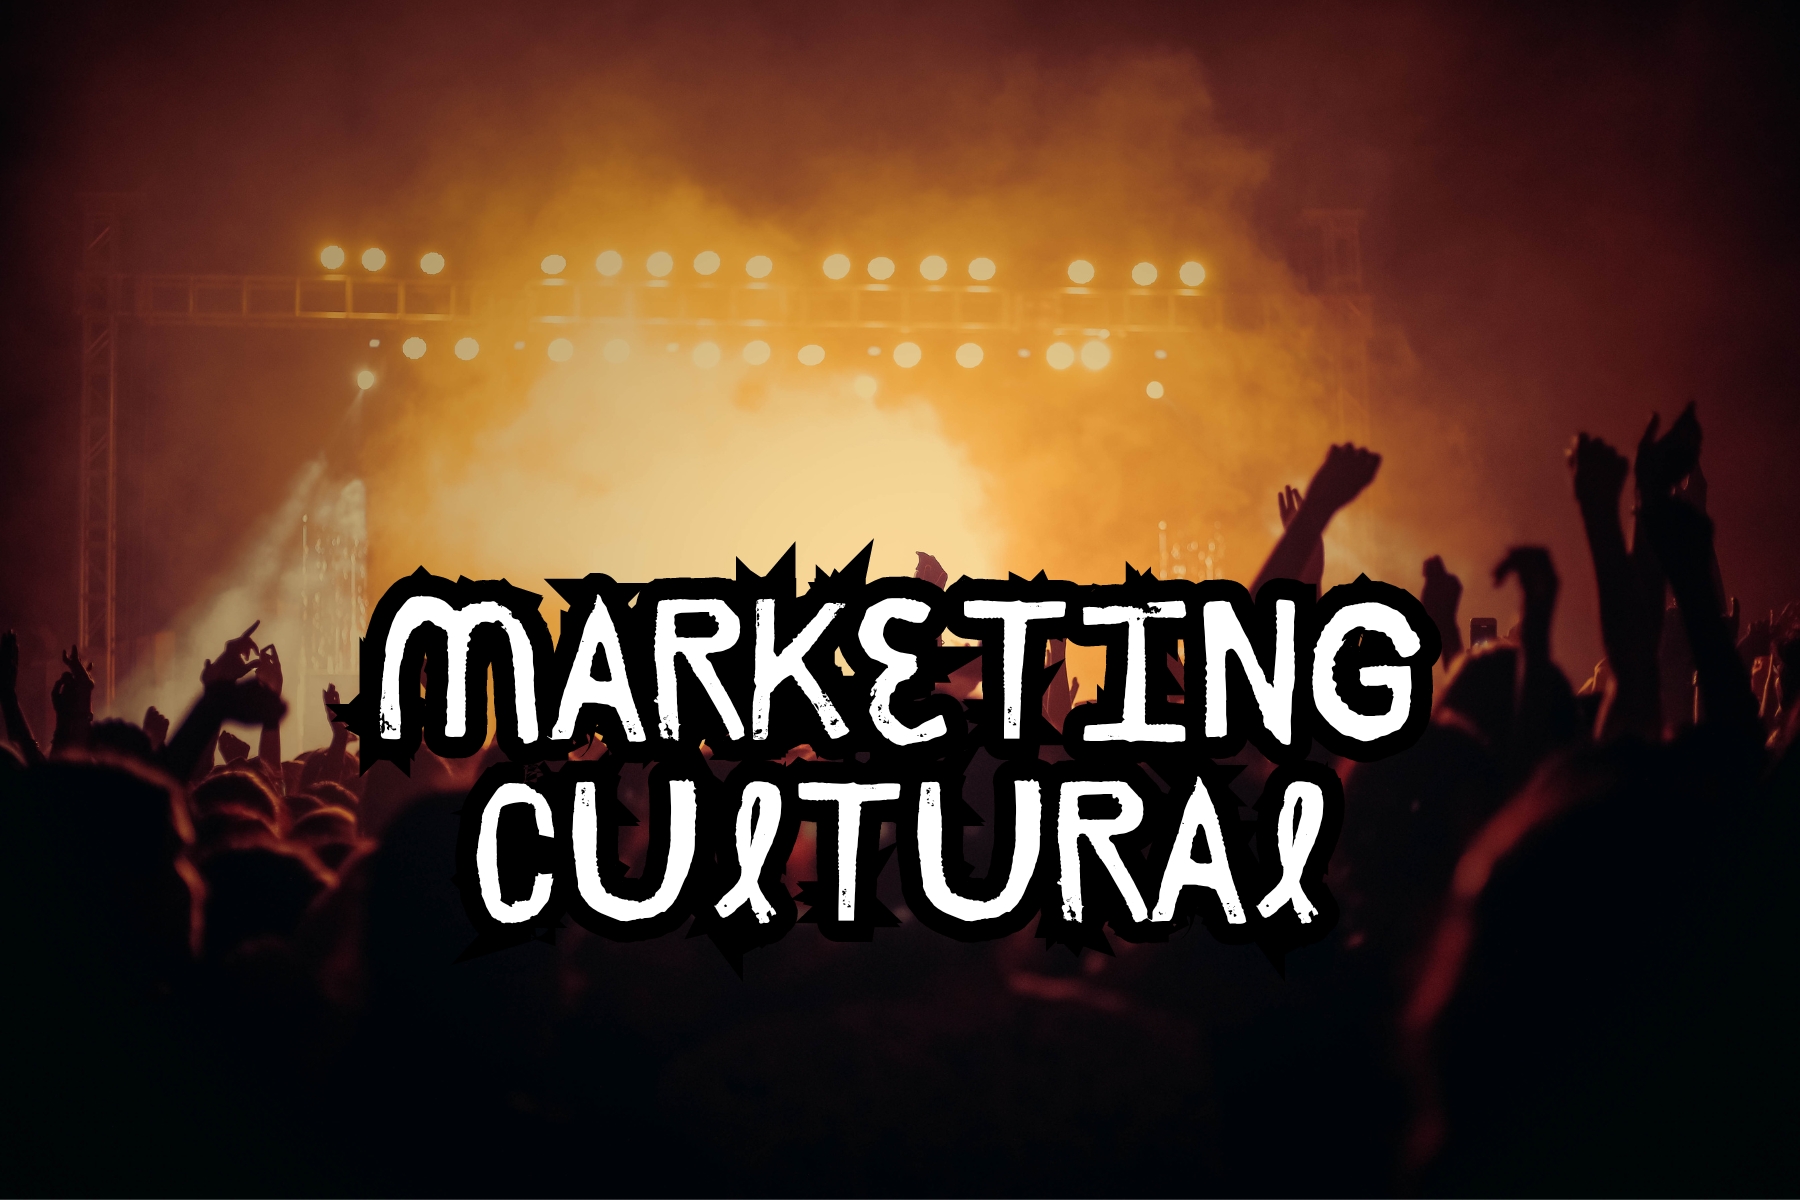 Descubra o que é marketing cultural, sua importância e como aplicá-lo para criar conexões autênticas com seu público.